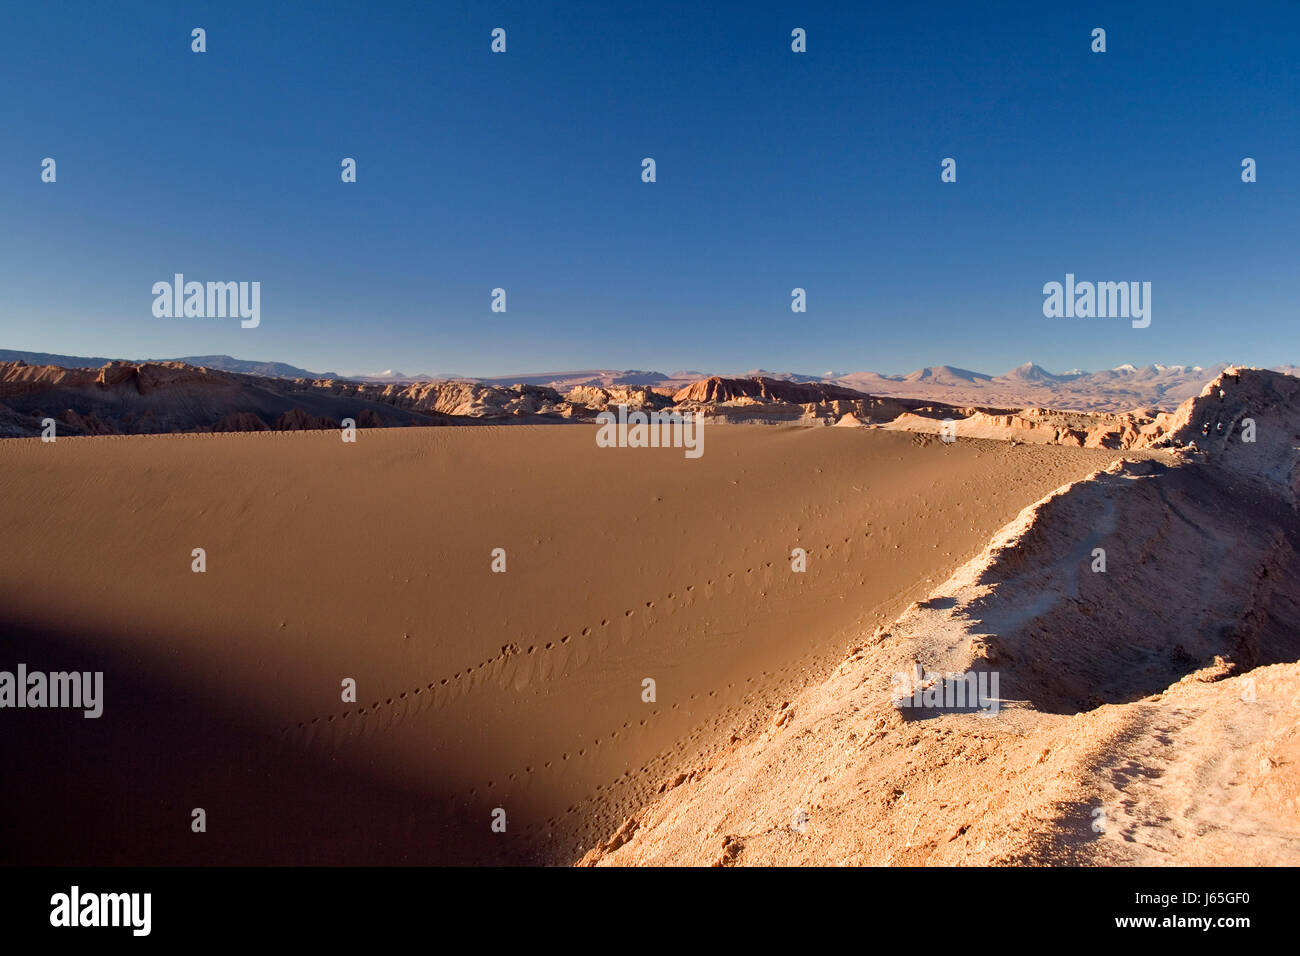 Désert désert Chili Amérique du Sud andes désert désert du sud chili rock Banque D'Images